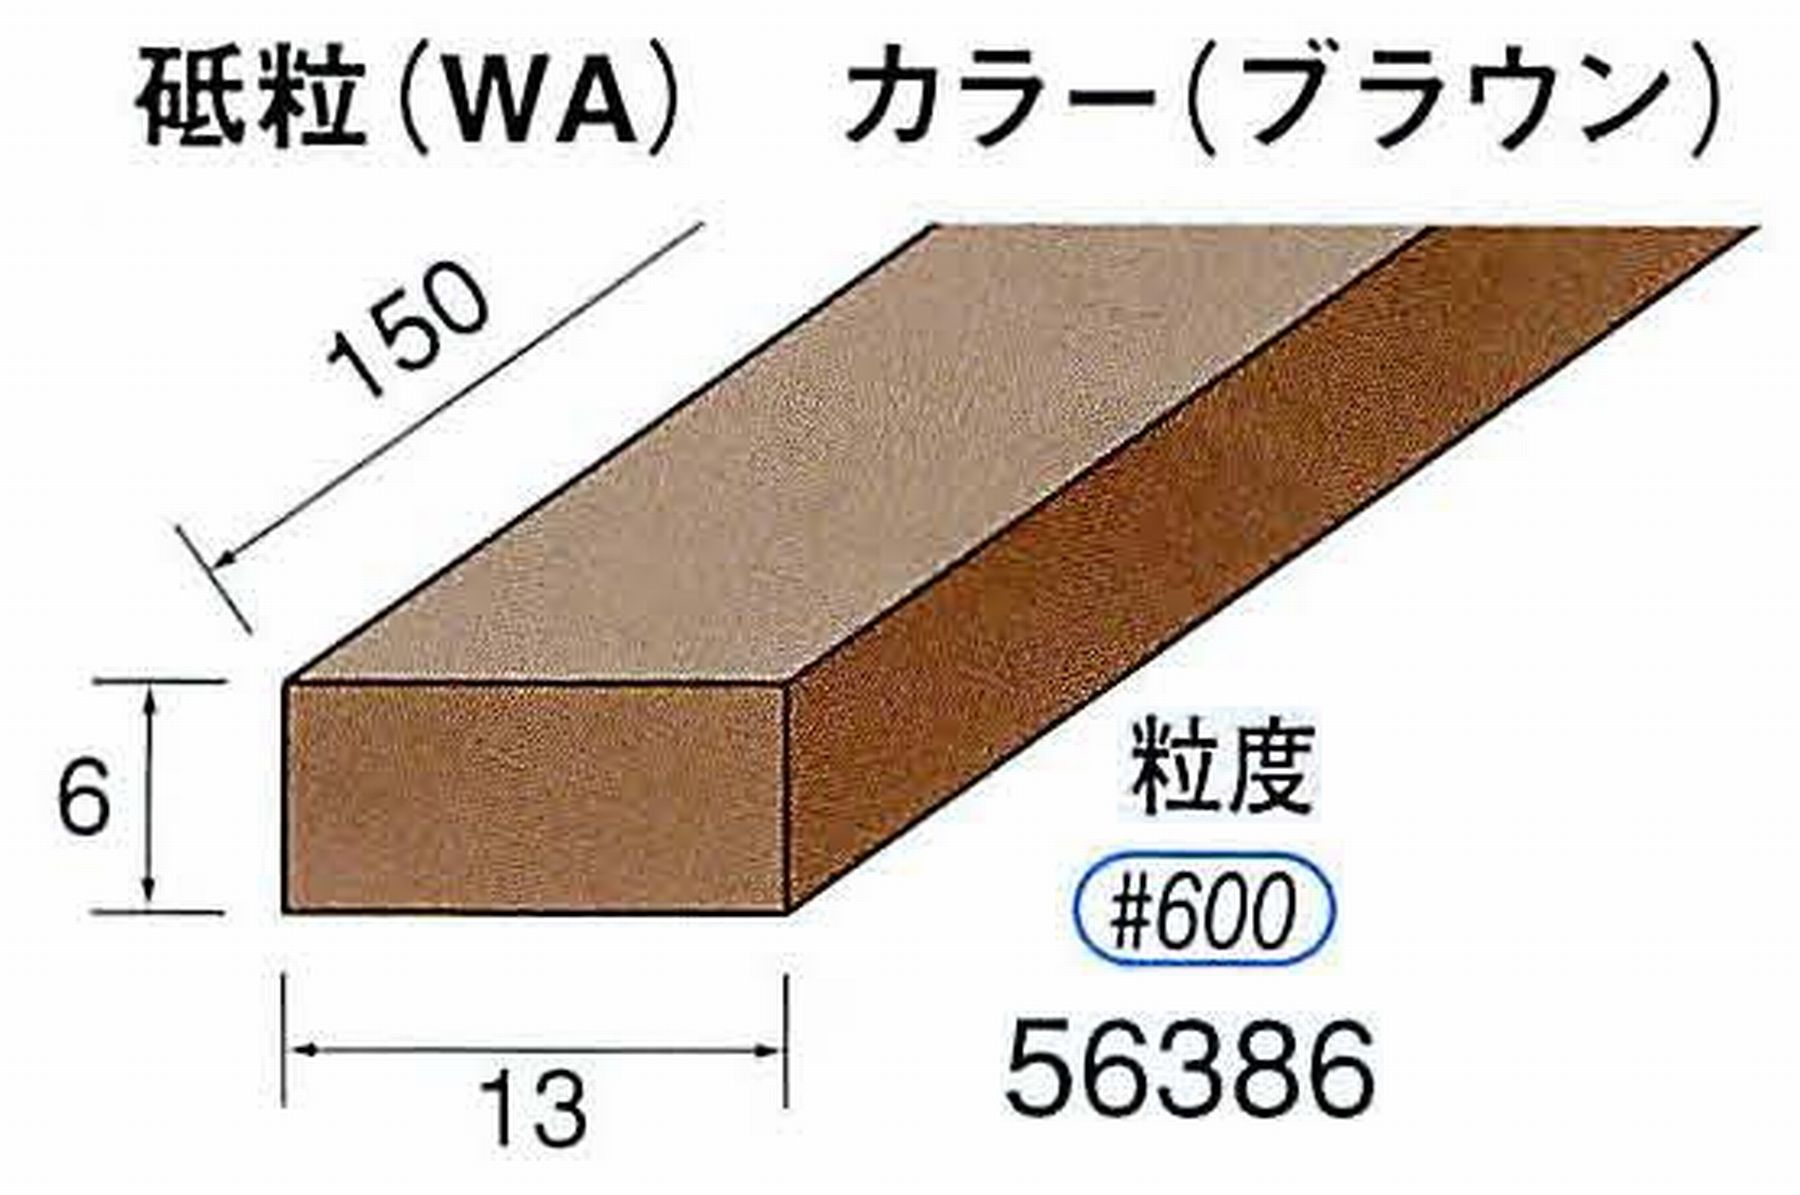 ナカニシ/NAKANISHI スティック砥石 ブラウン・フィニッシュシリーズ 砥粒(WA) 56386